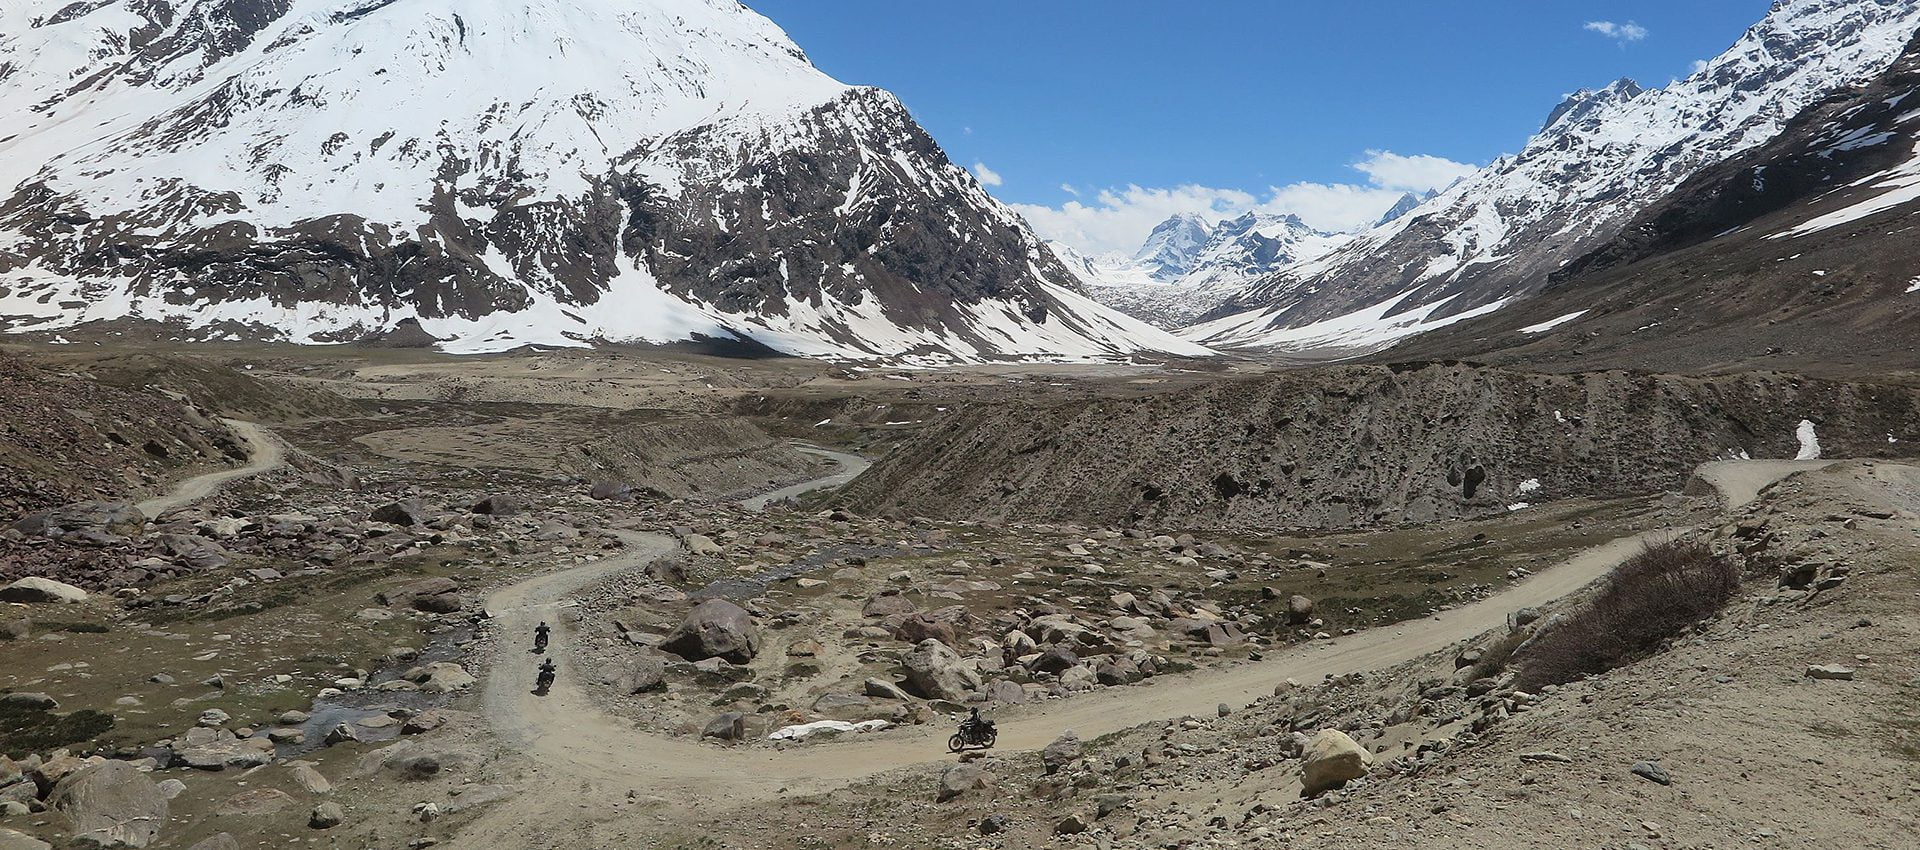 Trans Himalaya Motor Challenge van Travel 2 Explore met nieuwe routes in 2022